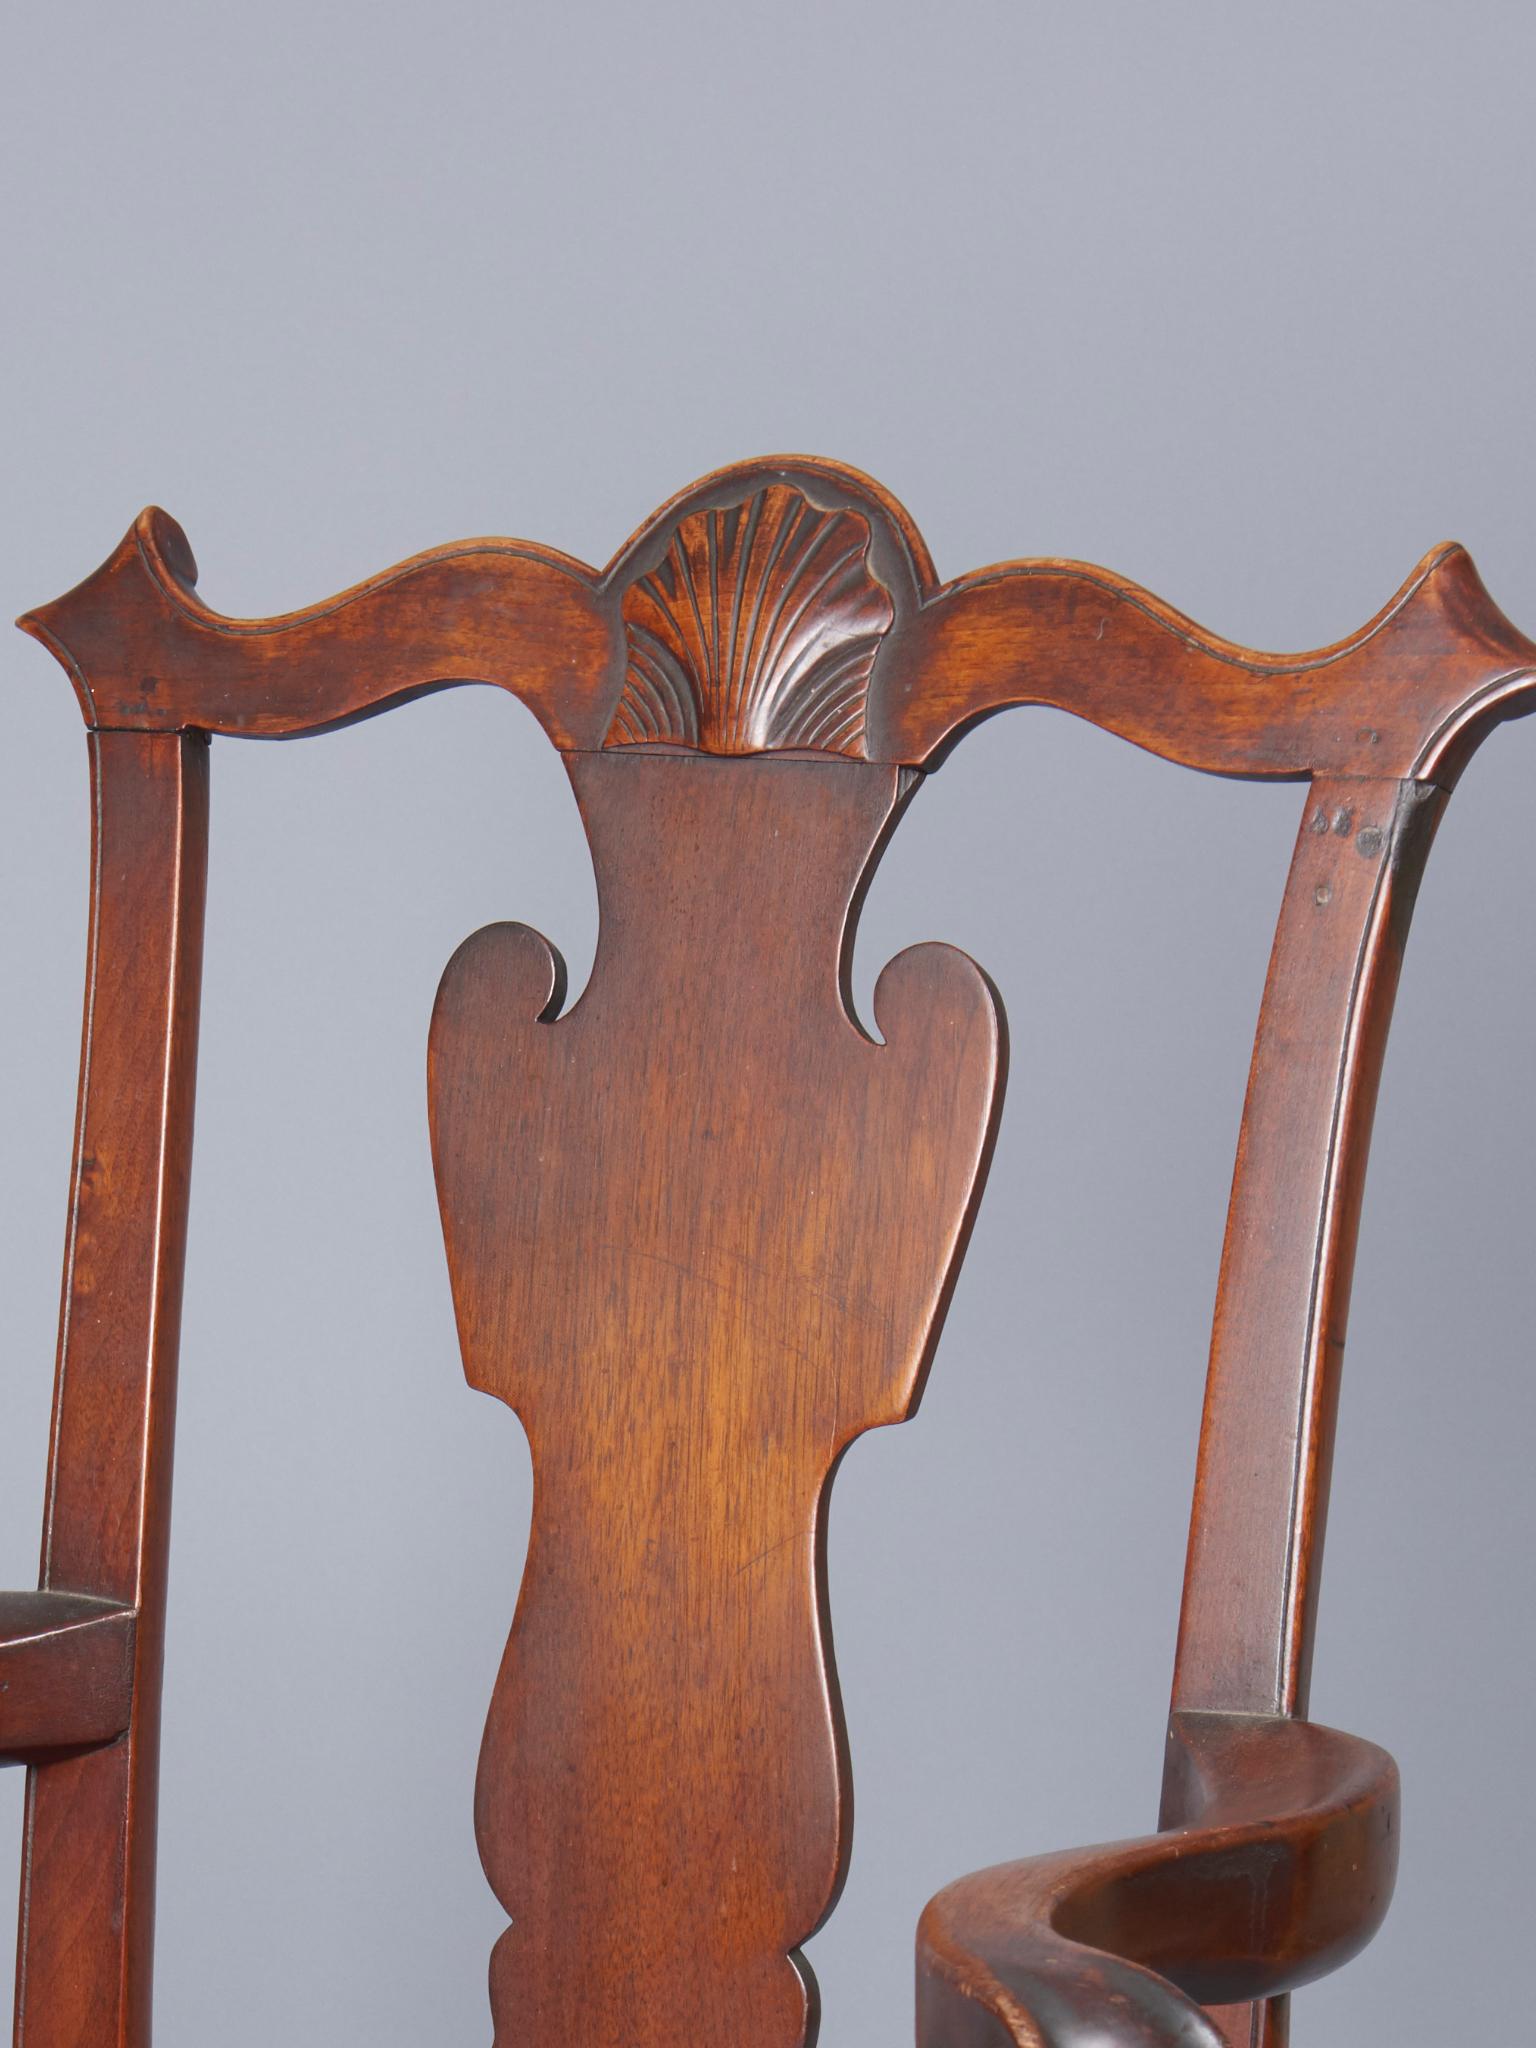 Coquille sur la crête, splat solide, grand support de bras et articulations sculptées. Pieds cabriole se terminant par des pieds en forme de coussins. Belle patine. Philadelphie, vers 1760.